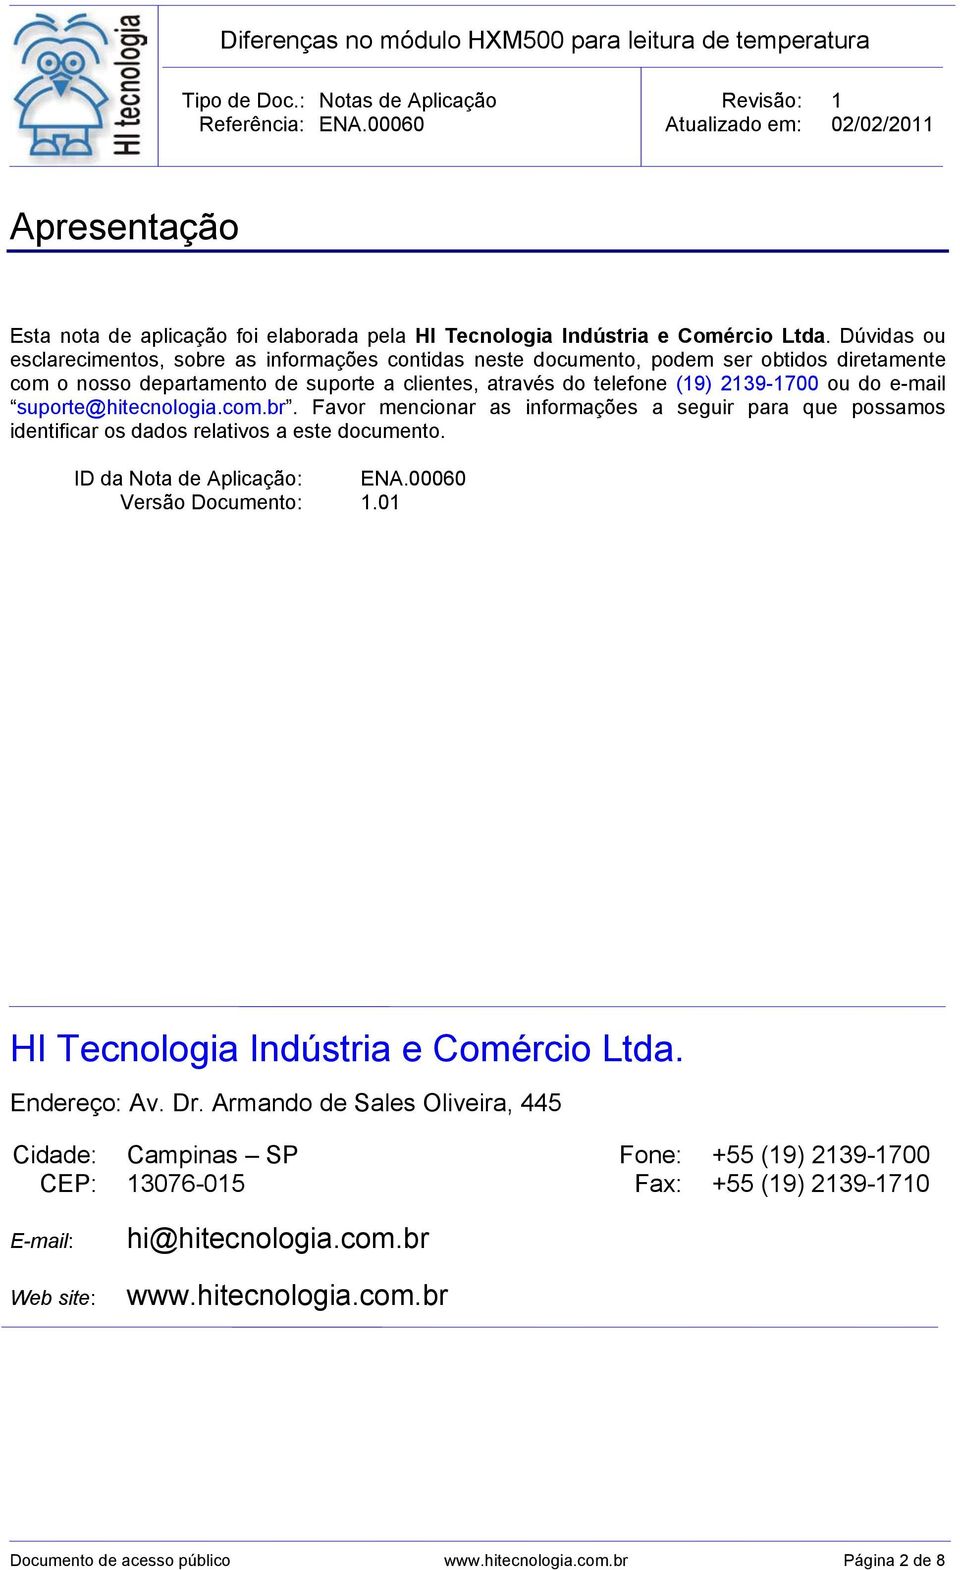 e-mail suporte@hitecnologia.com.br. Favor mencionar as informações a seguir para que possamos identificar os dados relativos a este documento. ID da Nota de Aplicação: ENA.00060 Versão Documento: 1.